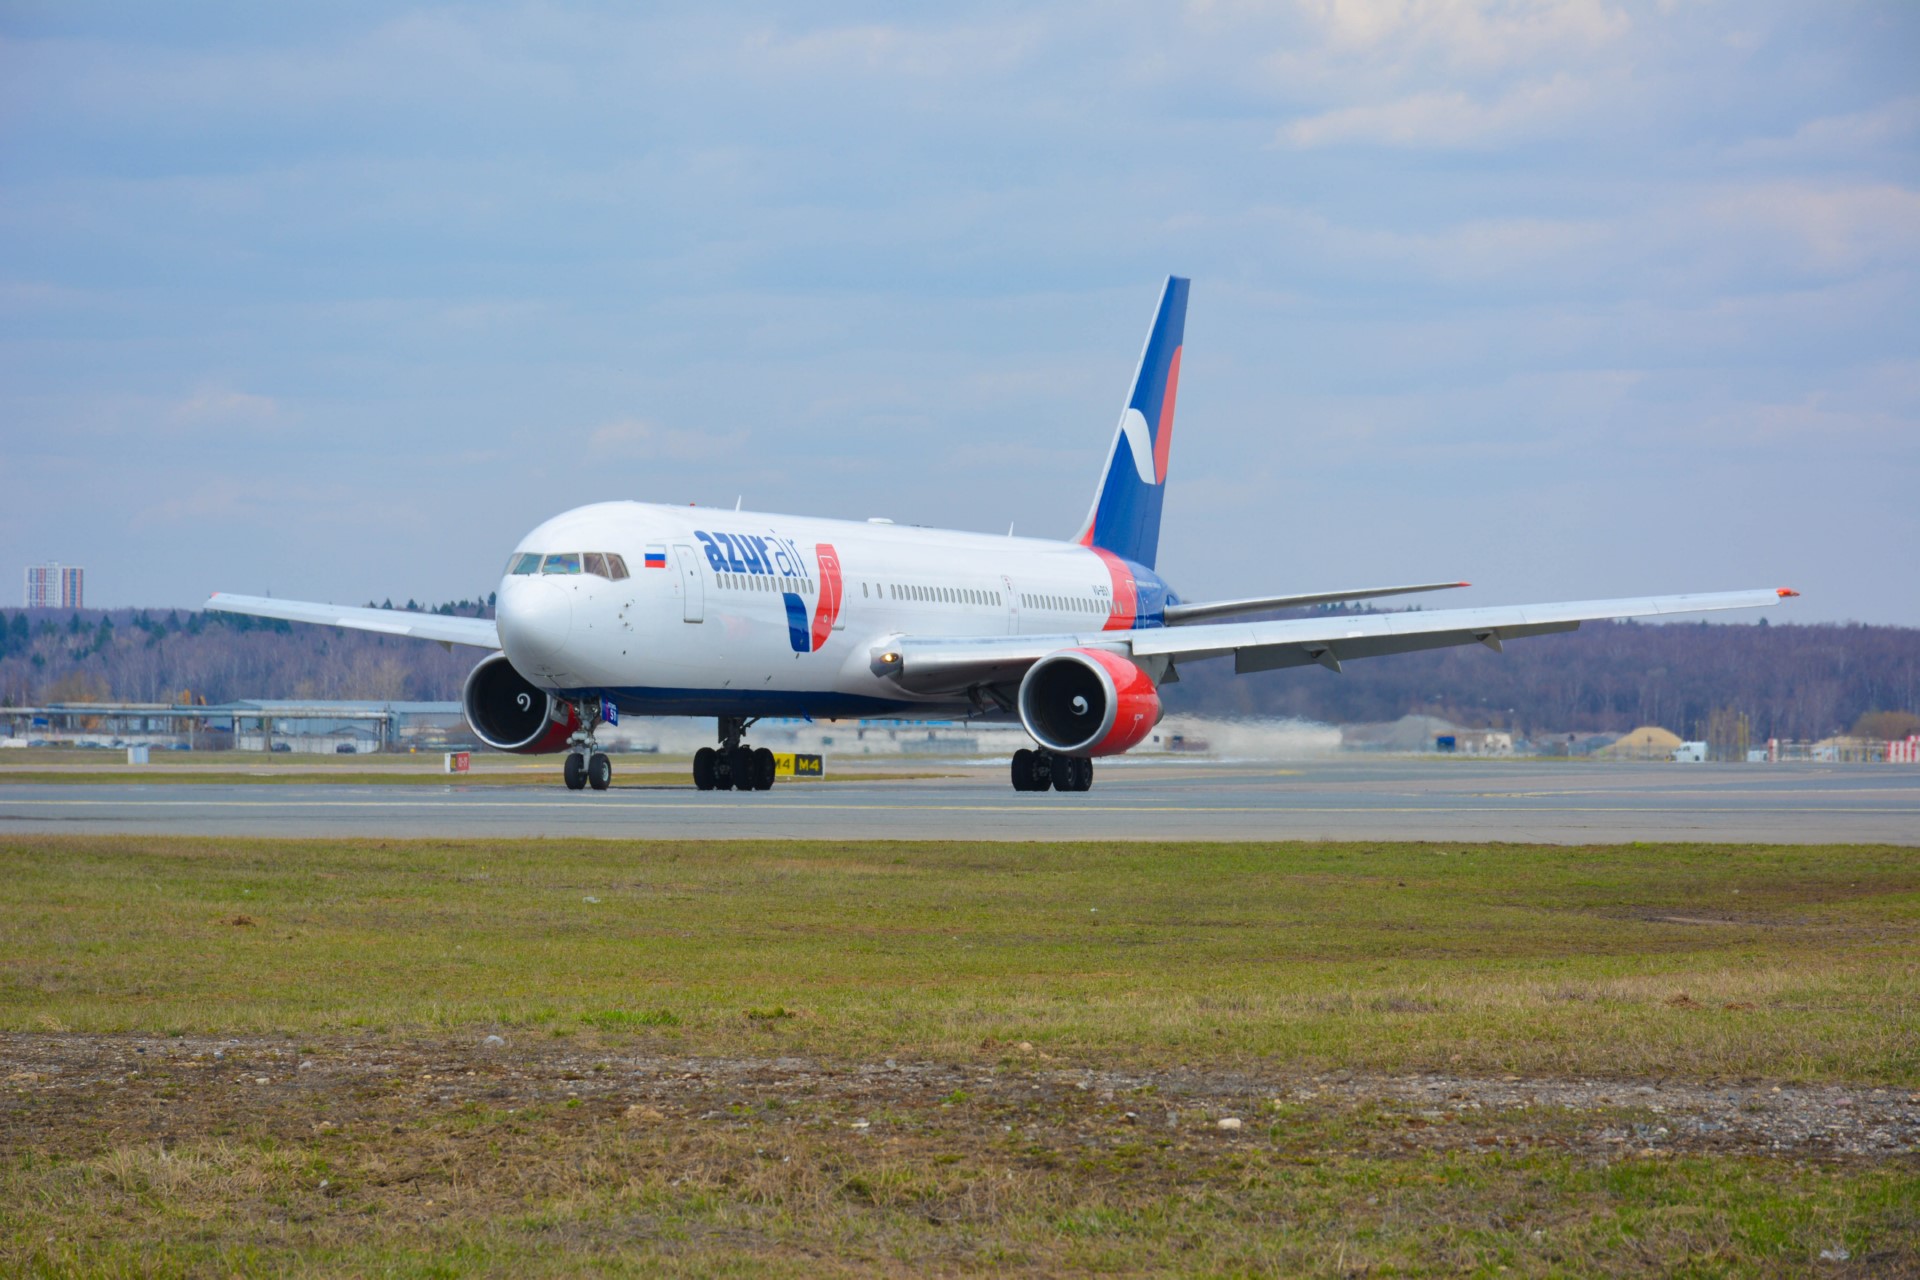 AZUR air, Новости, 08 мая 2020, AZUR air по заказу компании ГЕРОФАРМ выполнит рейс из Венесуэлы для возврата российских граждана